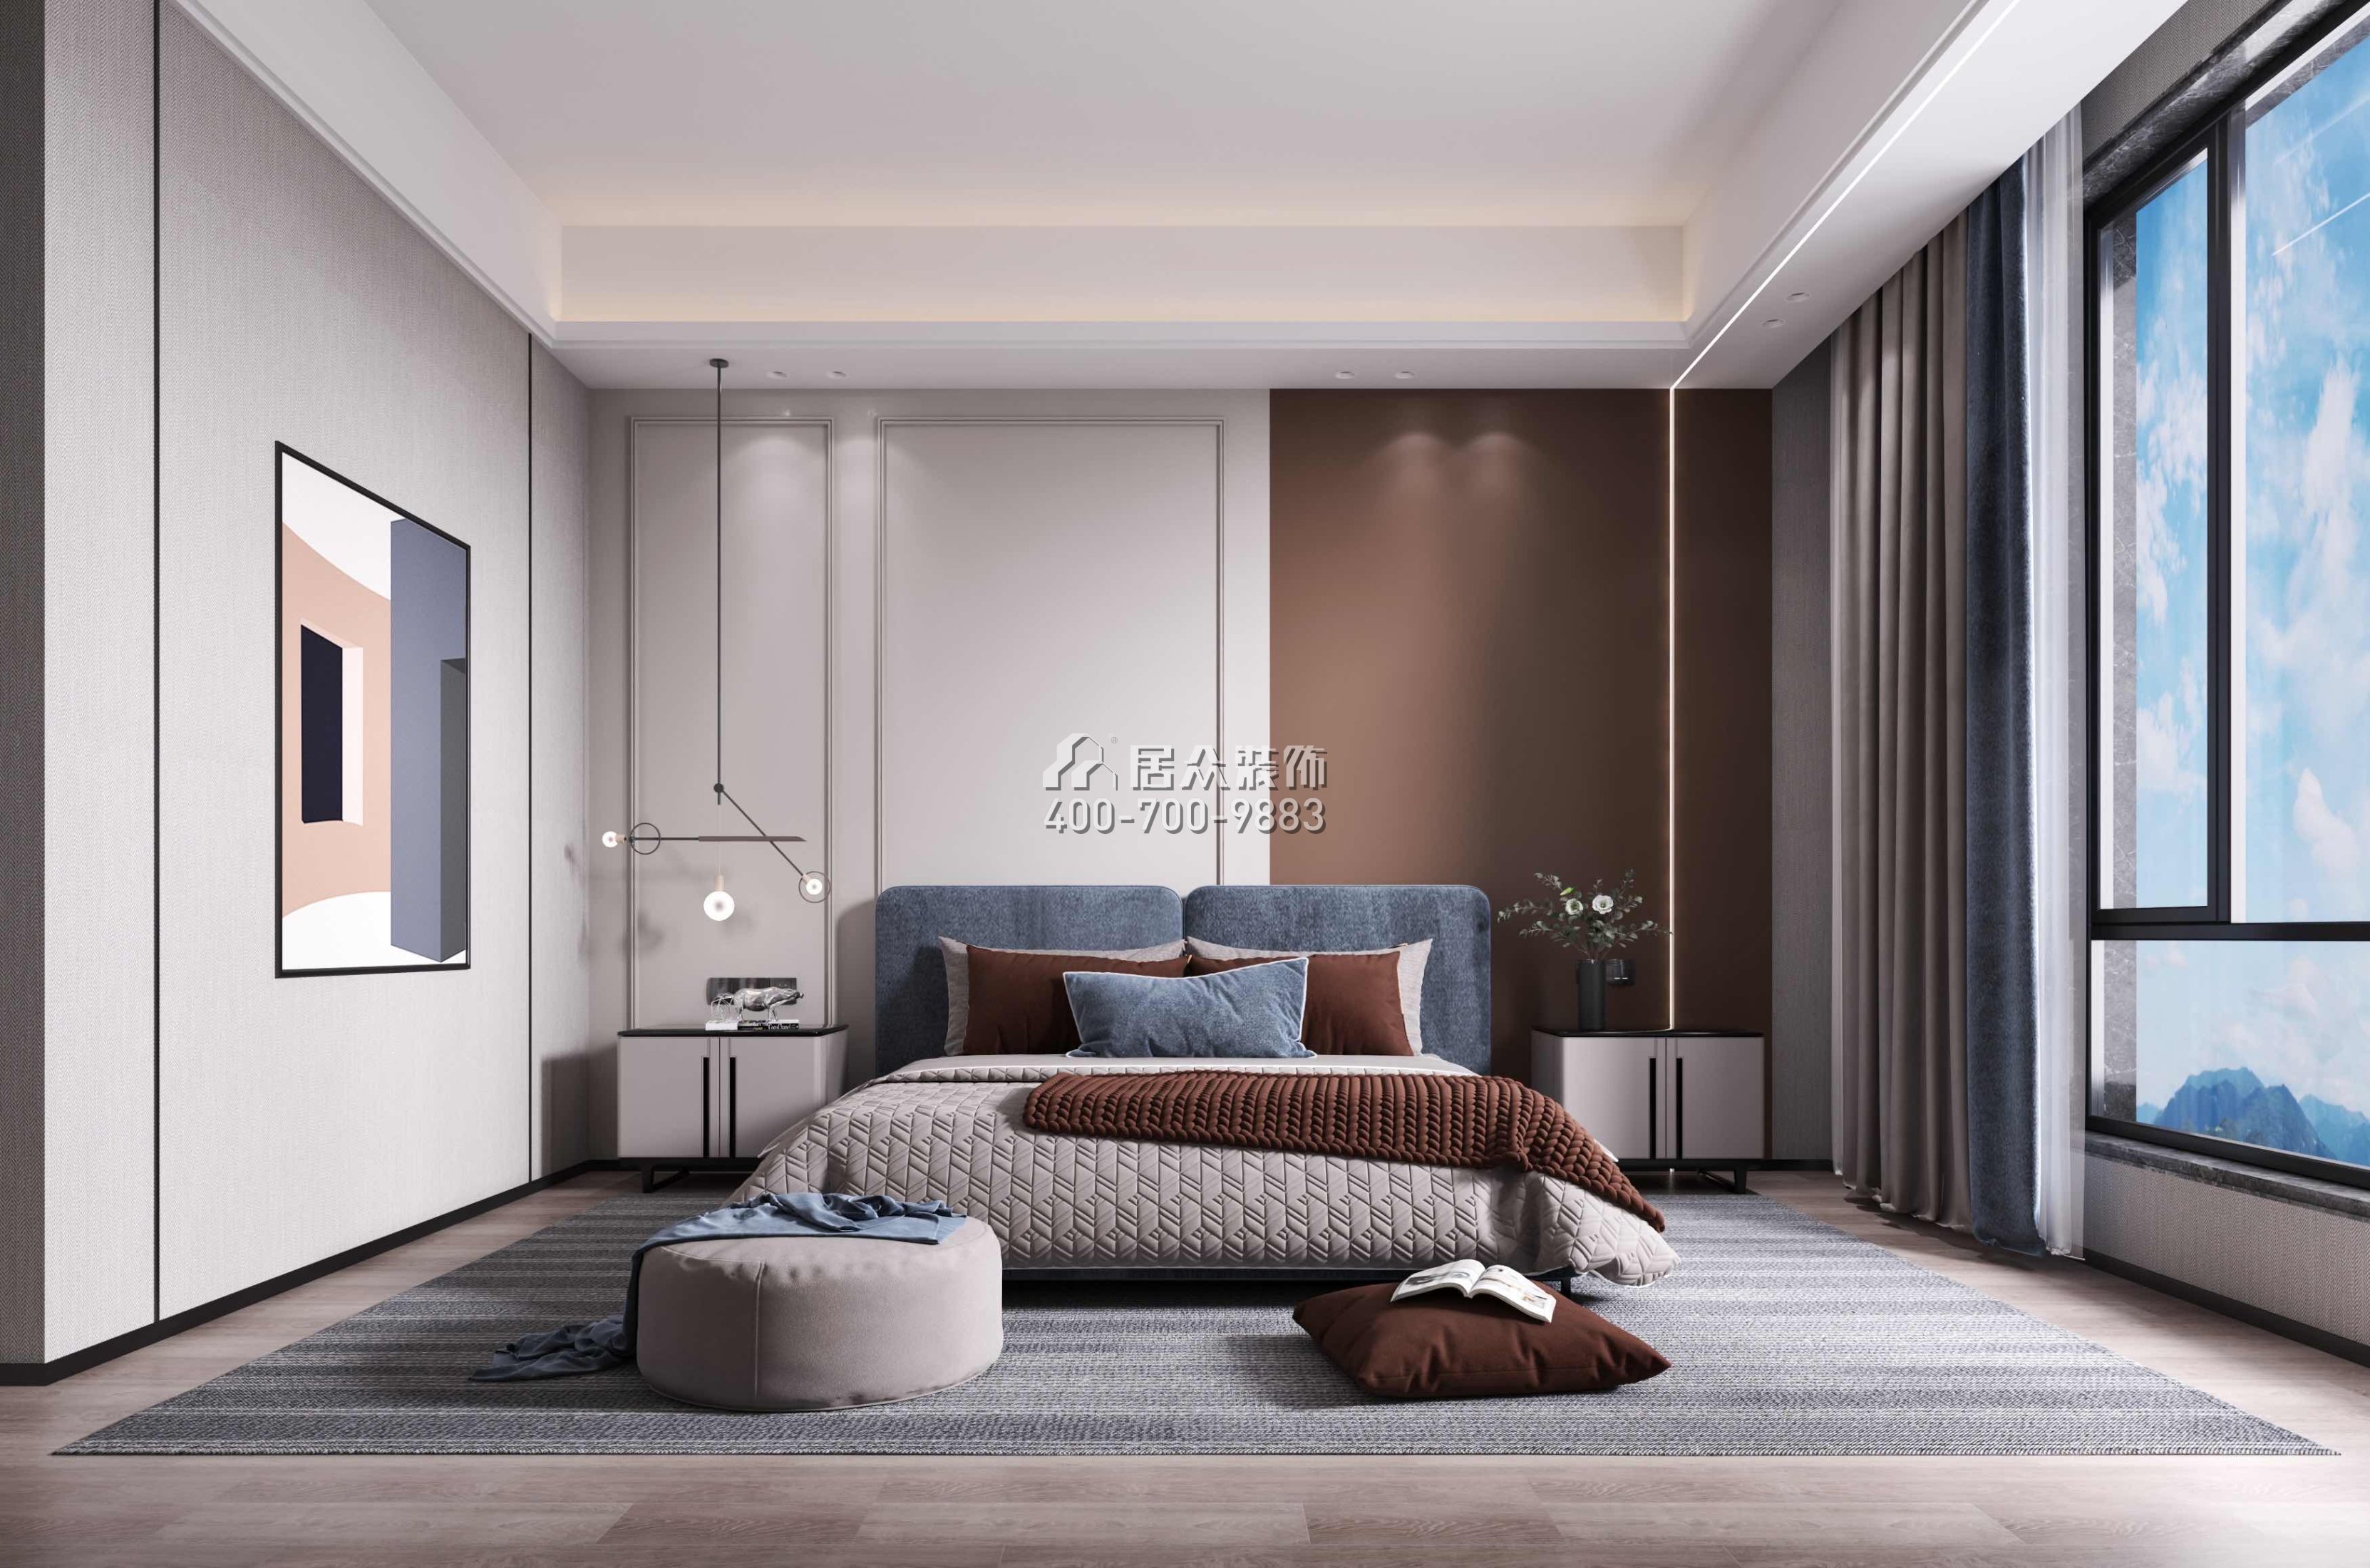 尚东紫御598平方米现代简约风格别墅户型卧室装修效果图